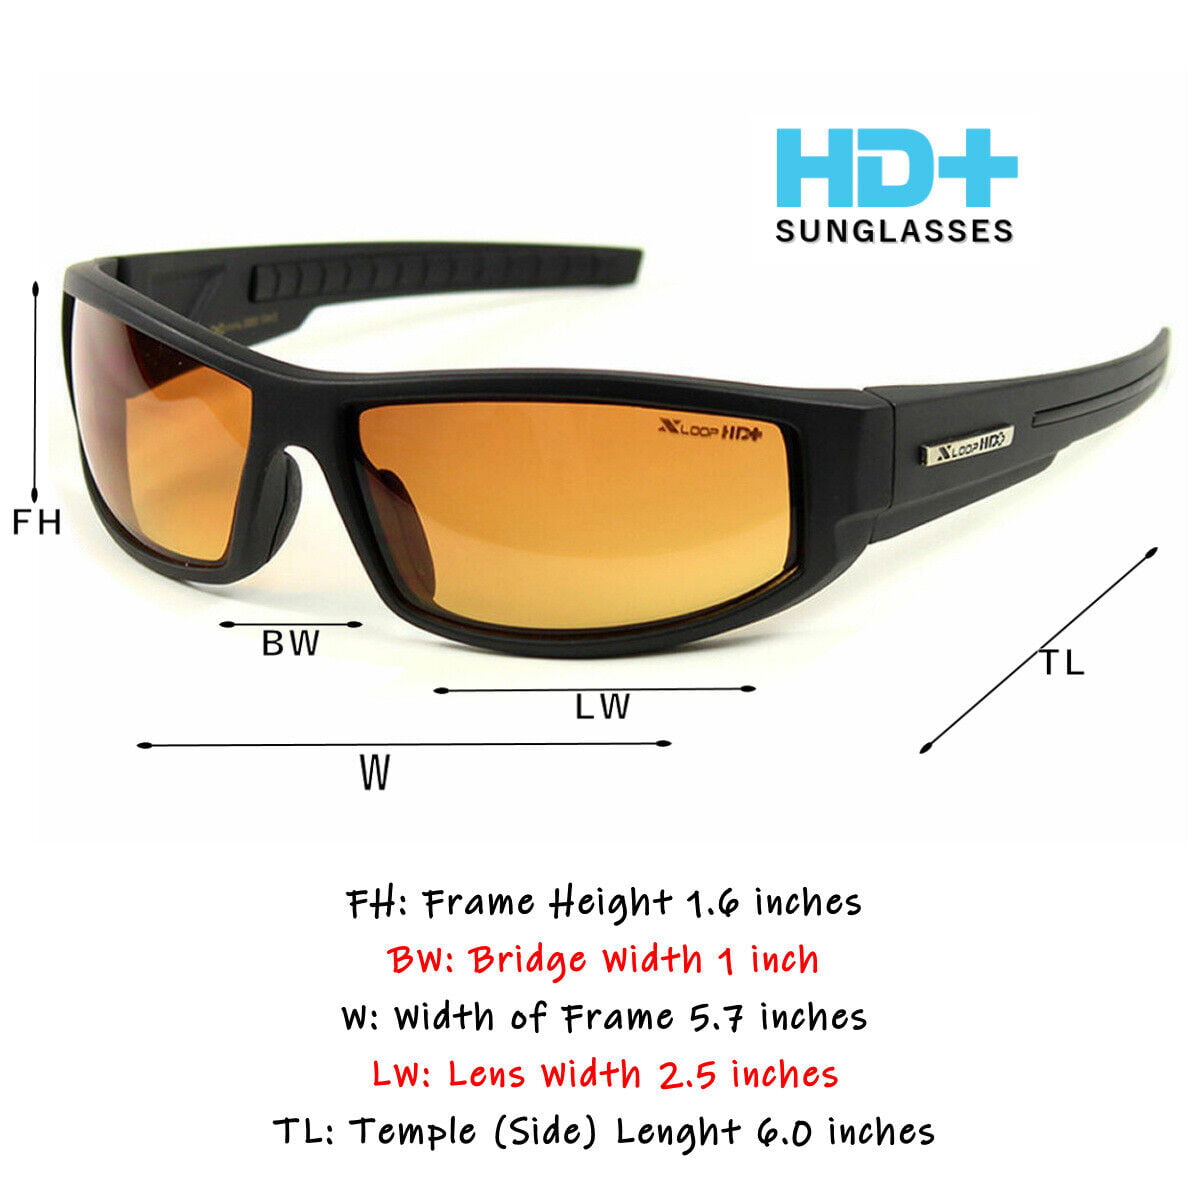 HD Sunglasses